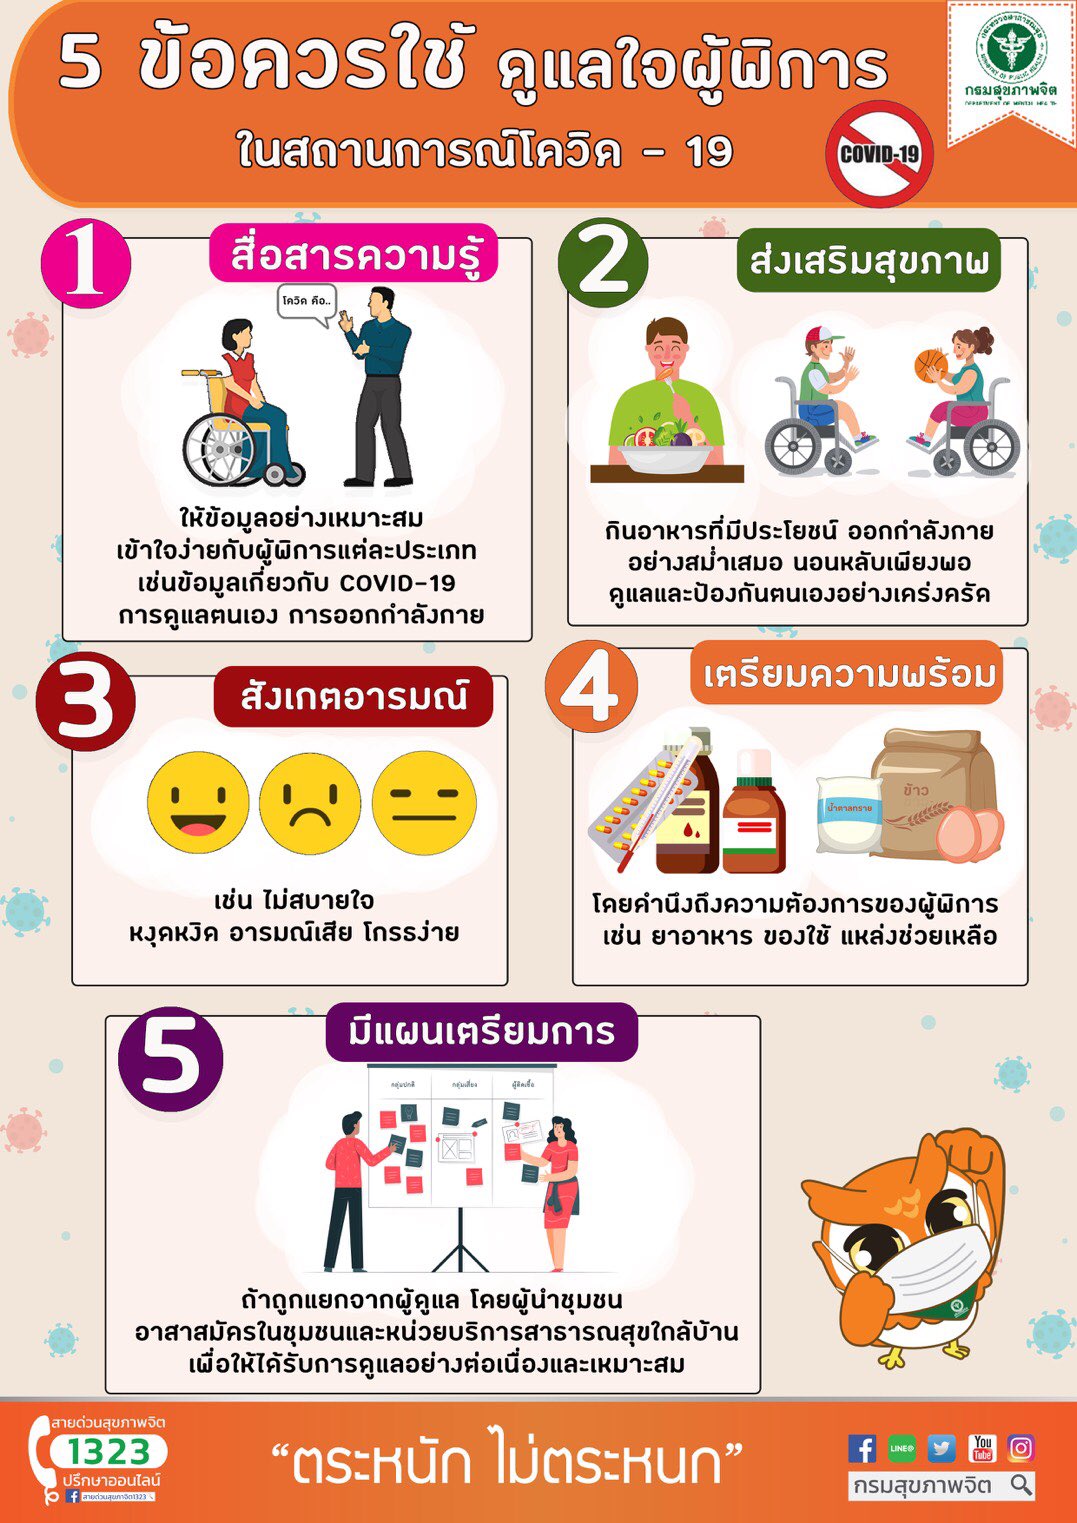 5 ข้อควรใช้ ดูแลใจผู้พิการ